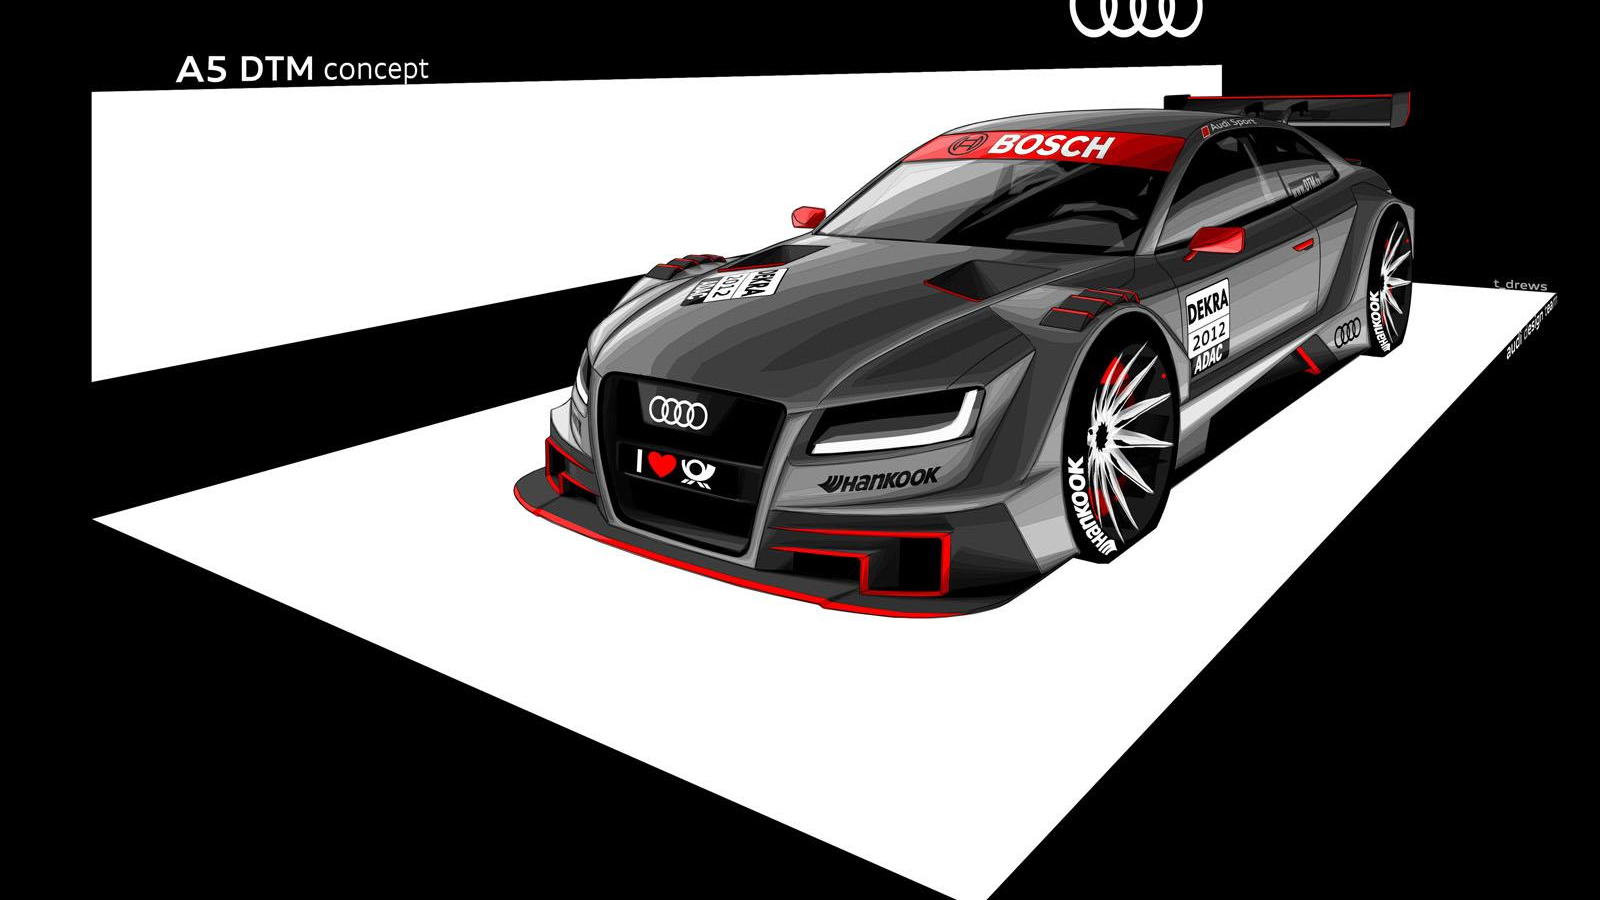 2012 Audi R17 A5 DTM race car preview sketch